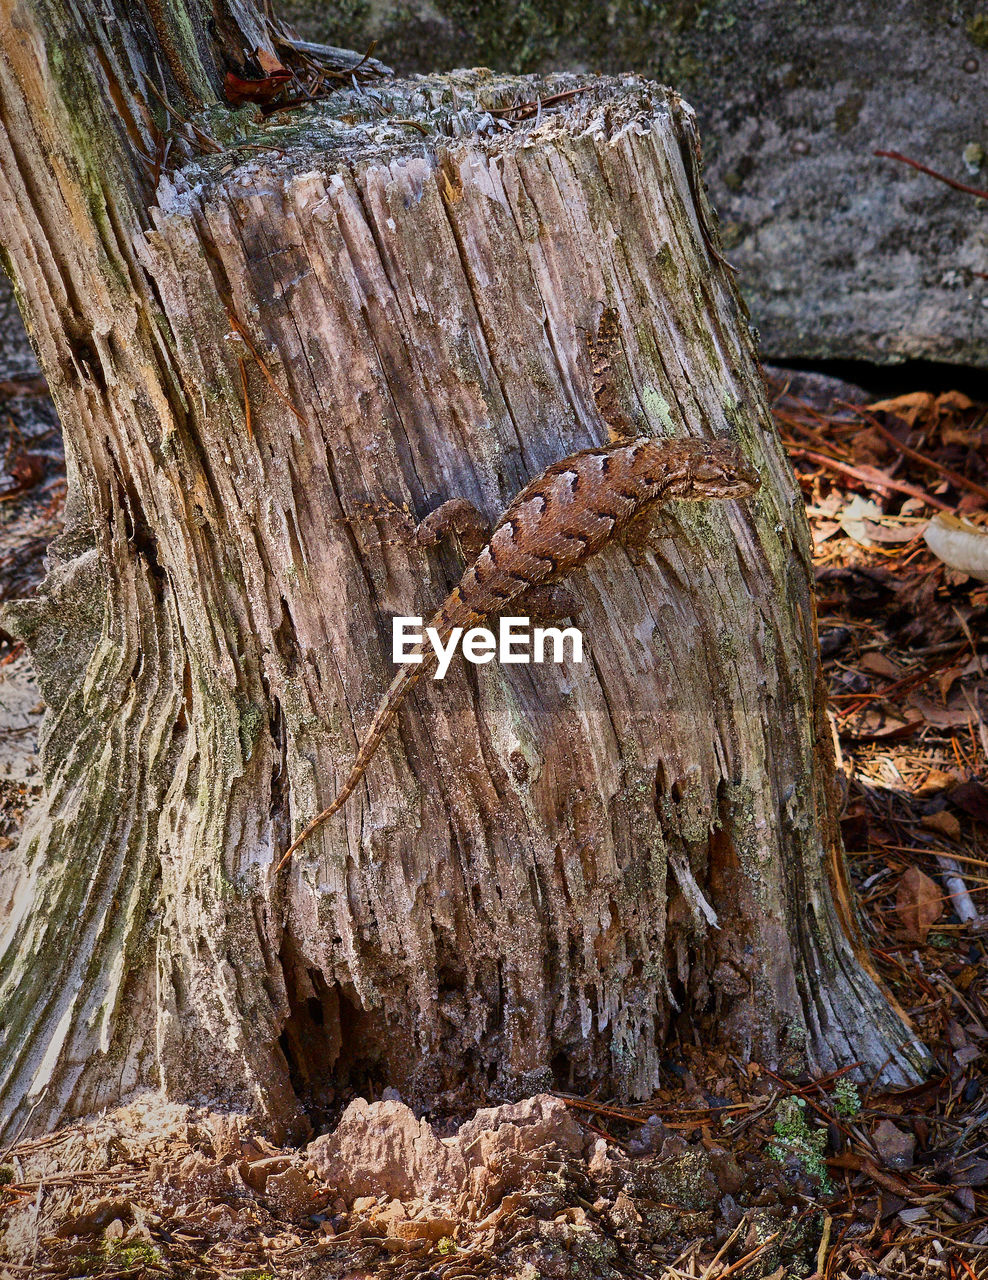 Fence lizard on tree stump